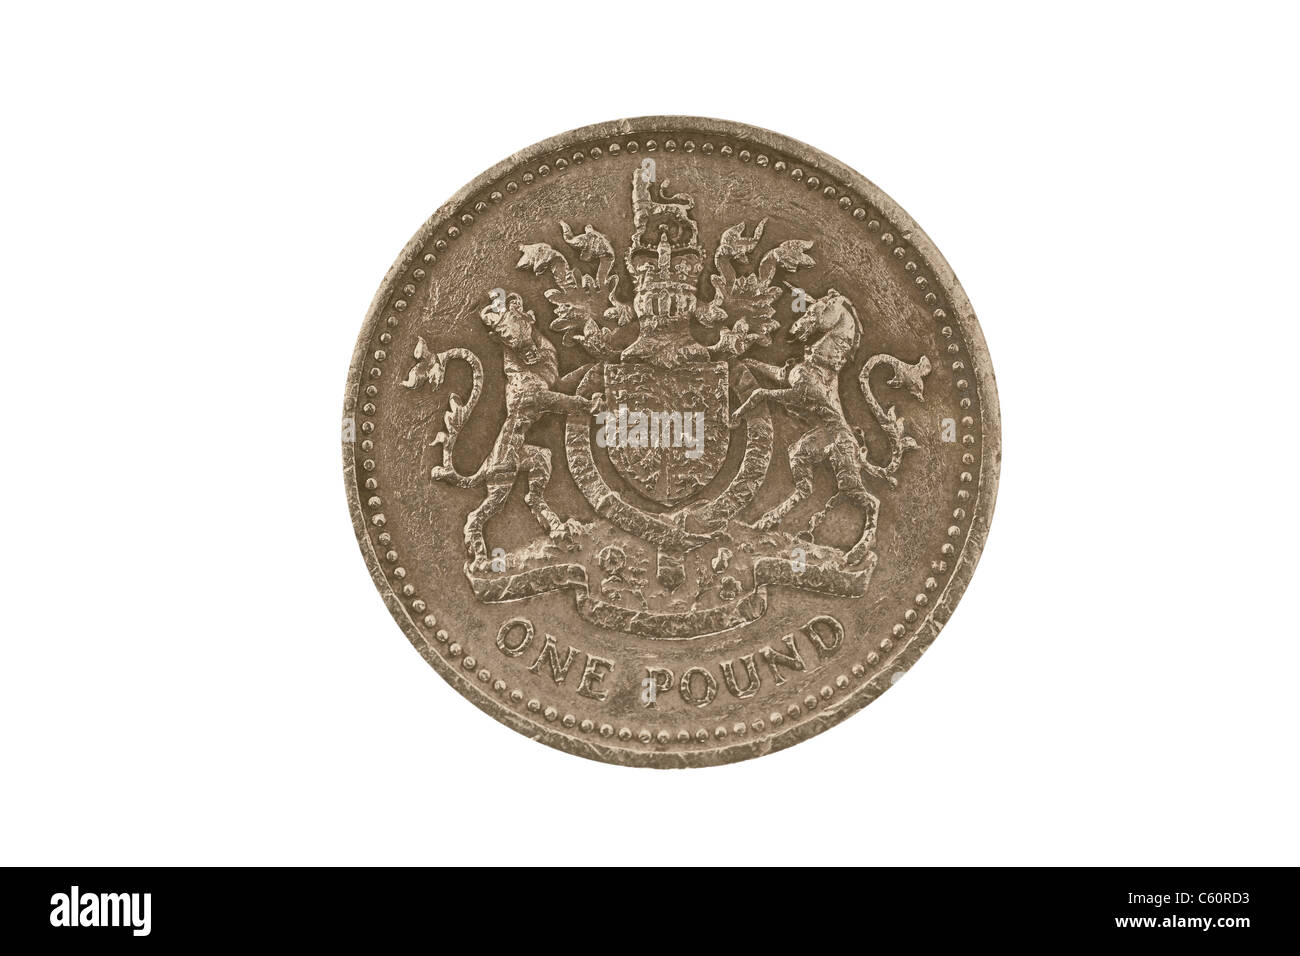 Detail-Foto einer 1 Pfund-Münze aus Großbritannien aus dem Jahr 1983 Stockfoto